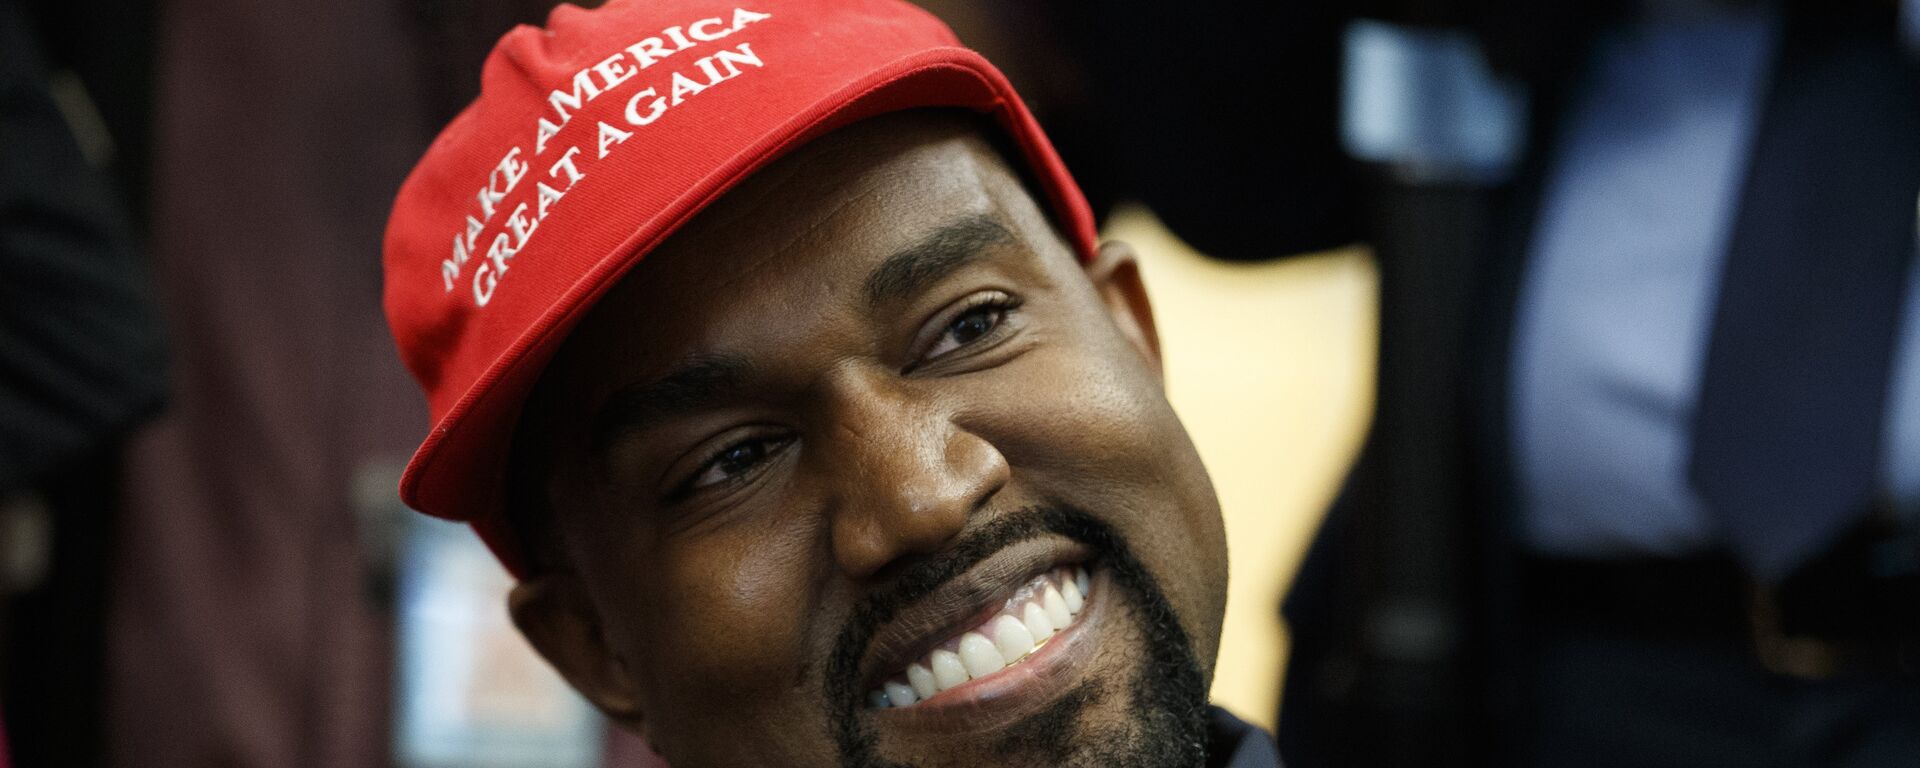 Rapper Kanye West mỉm cười khi nghe câu hỏi của phóng viên trong cuộc họp tại Phòng Bầu dục của Nhà Trắng với Tổng thống Donald Trump, Thứ Năm, ngày 11 tháng 10 năm 2018, tại Washington. - Sputnik Việt Nam, 1920, 13.08.2020